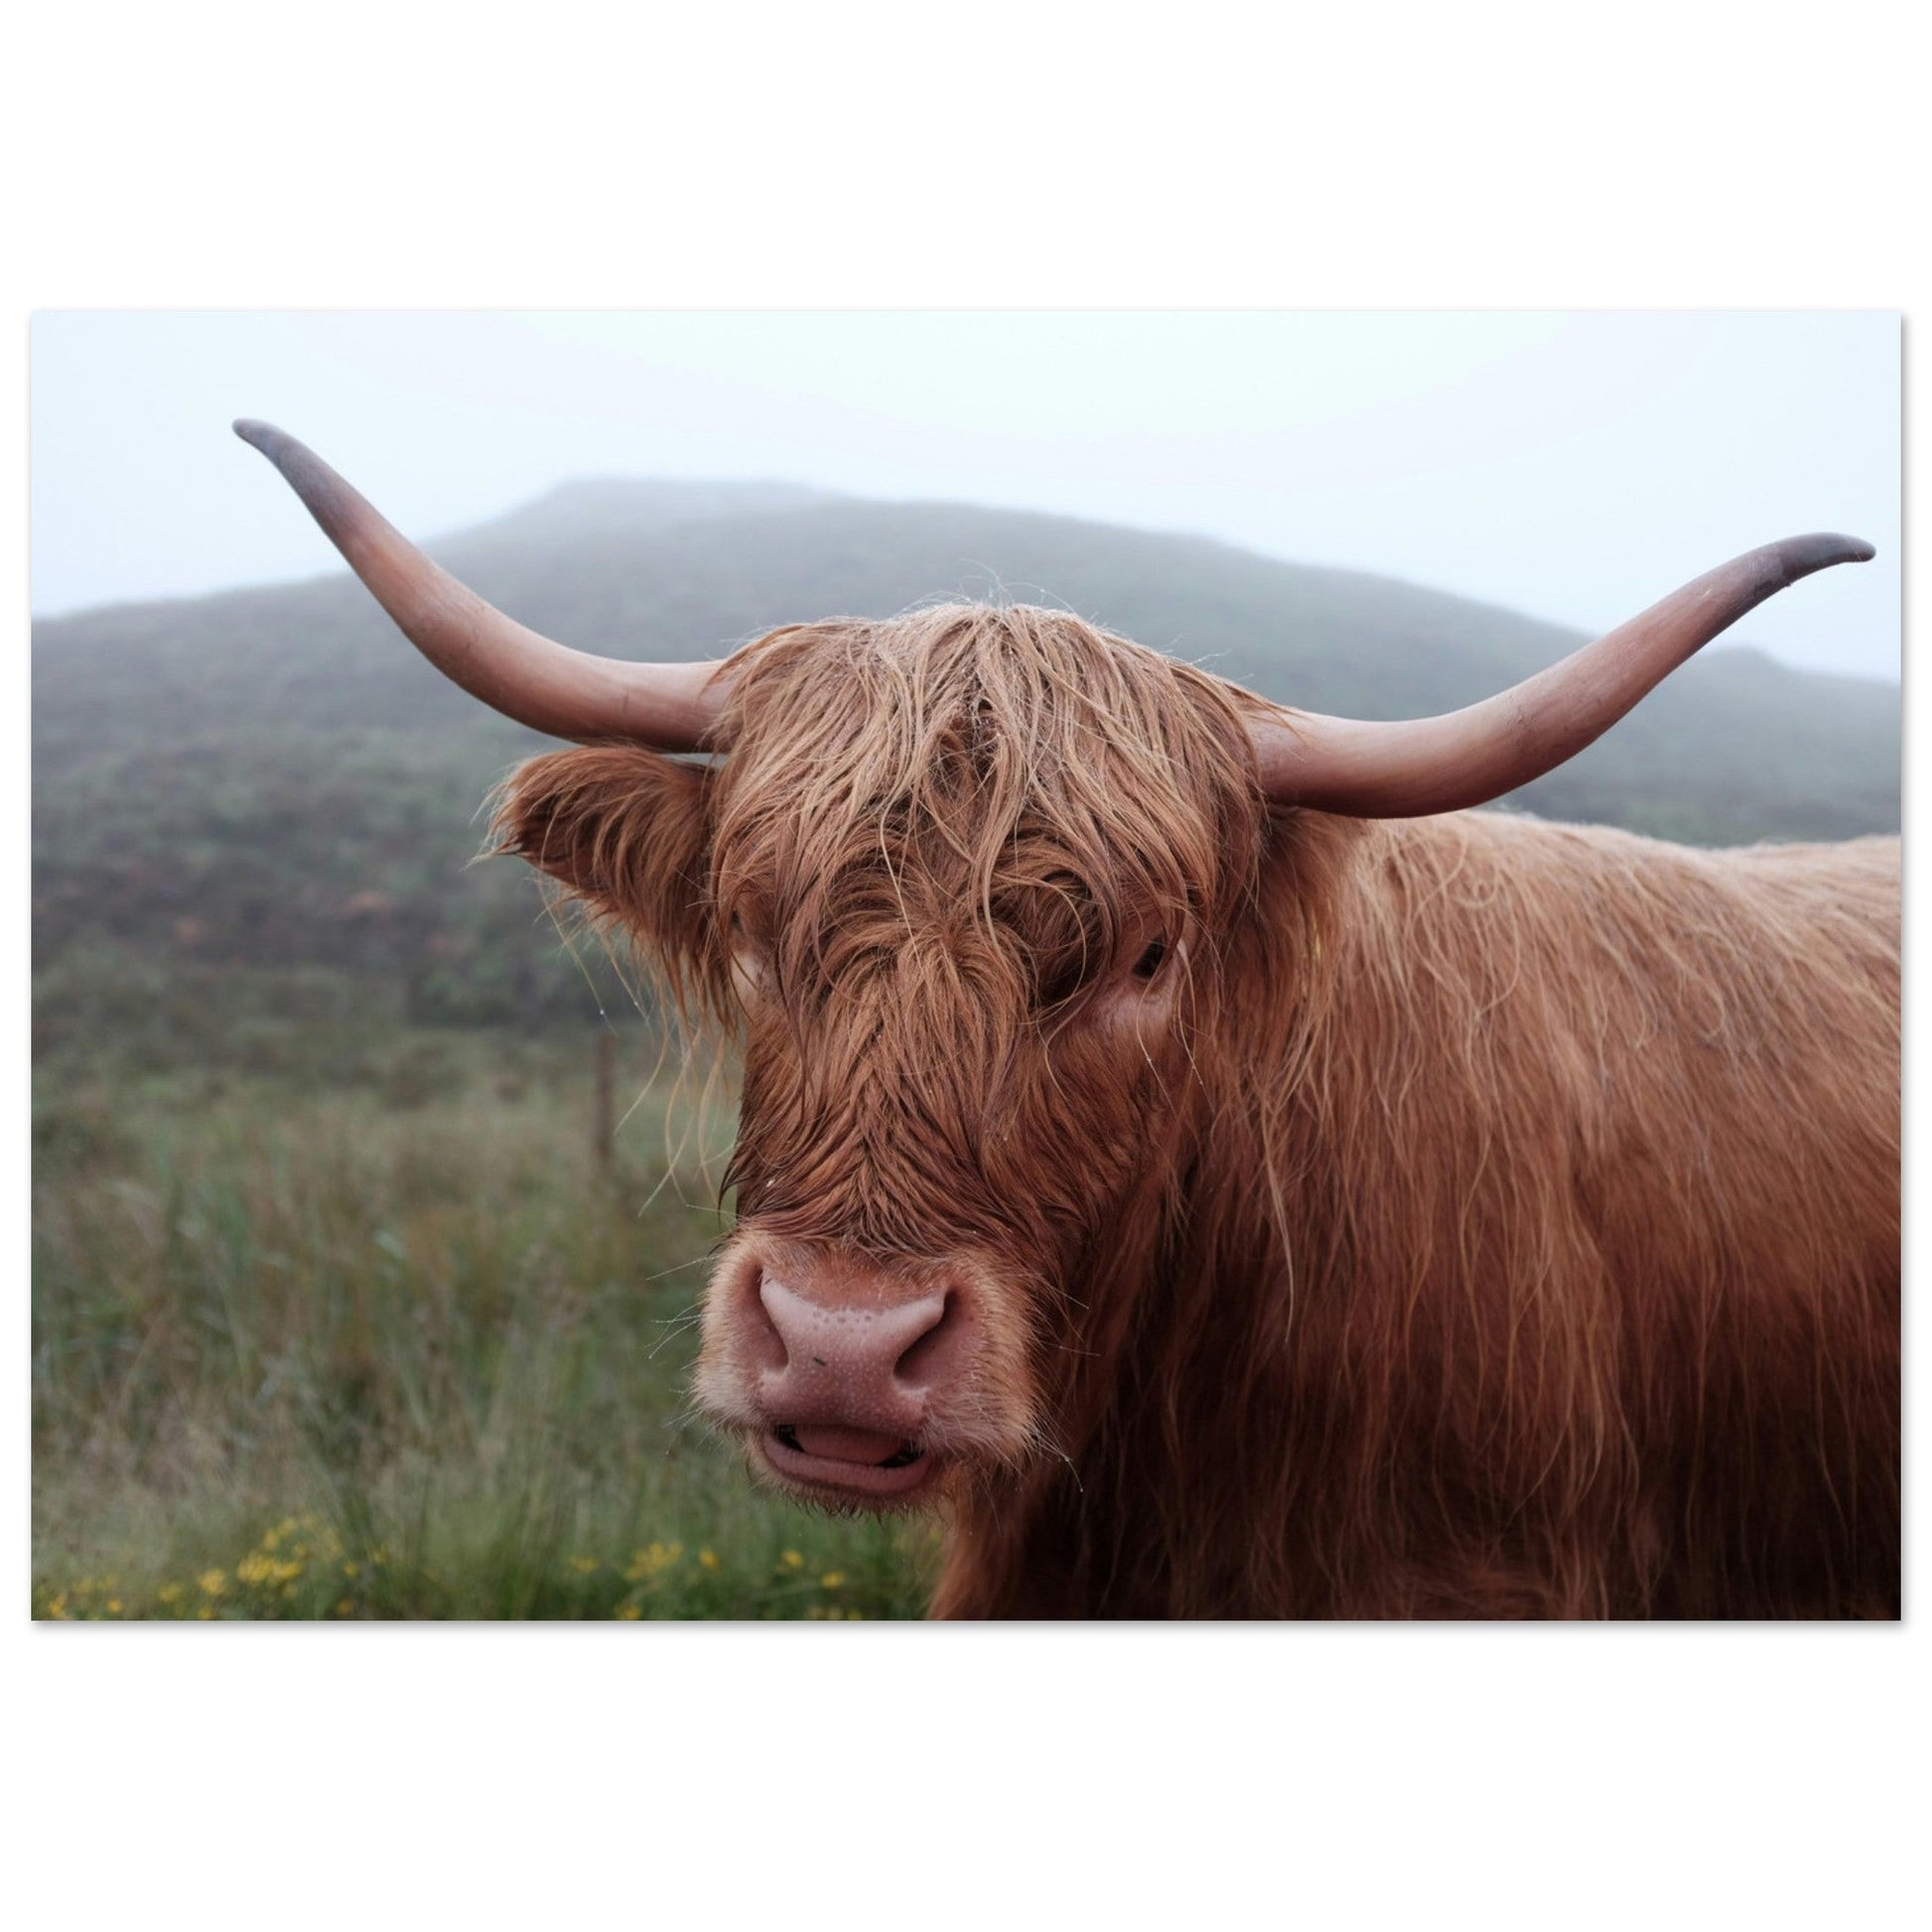 Vente Photo de vaches en Savoie #5 - Tableau photo paysage